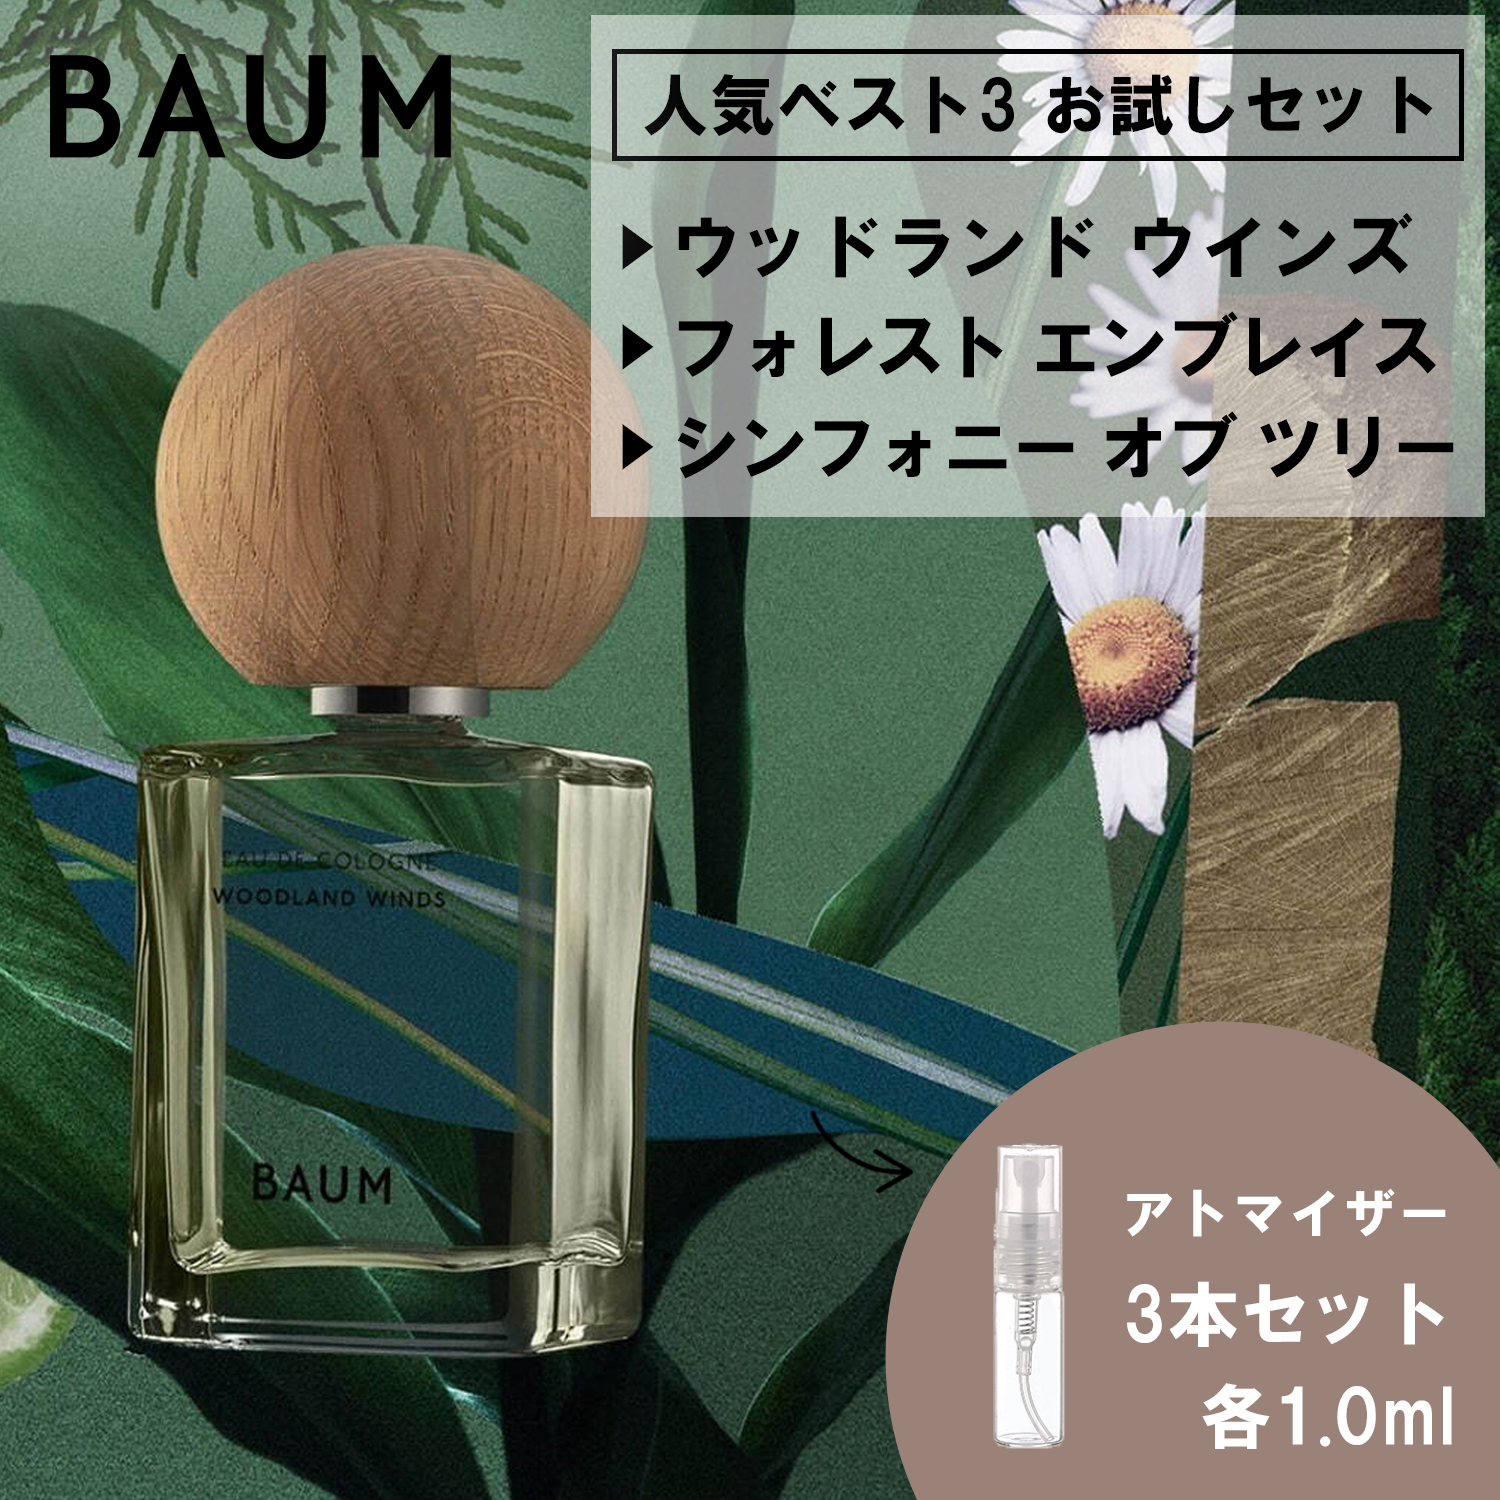 BAUM バウム 香水 お試し 1ml 人気 3本セット メンズ レディース ユニ